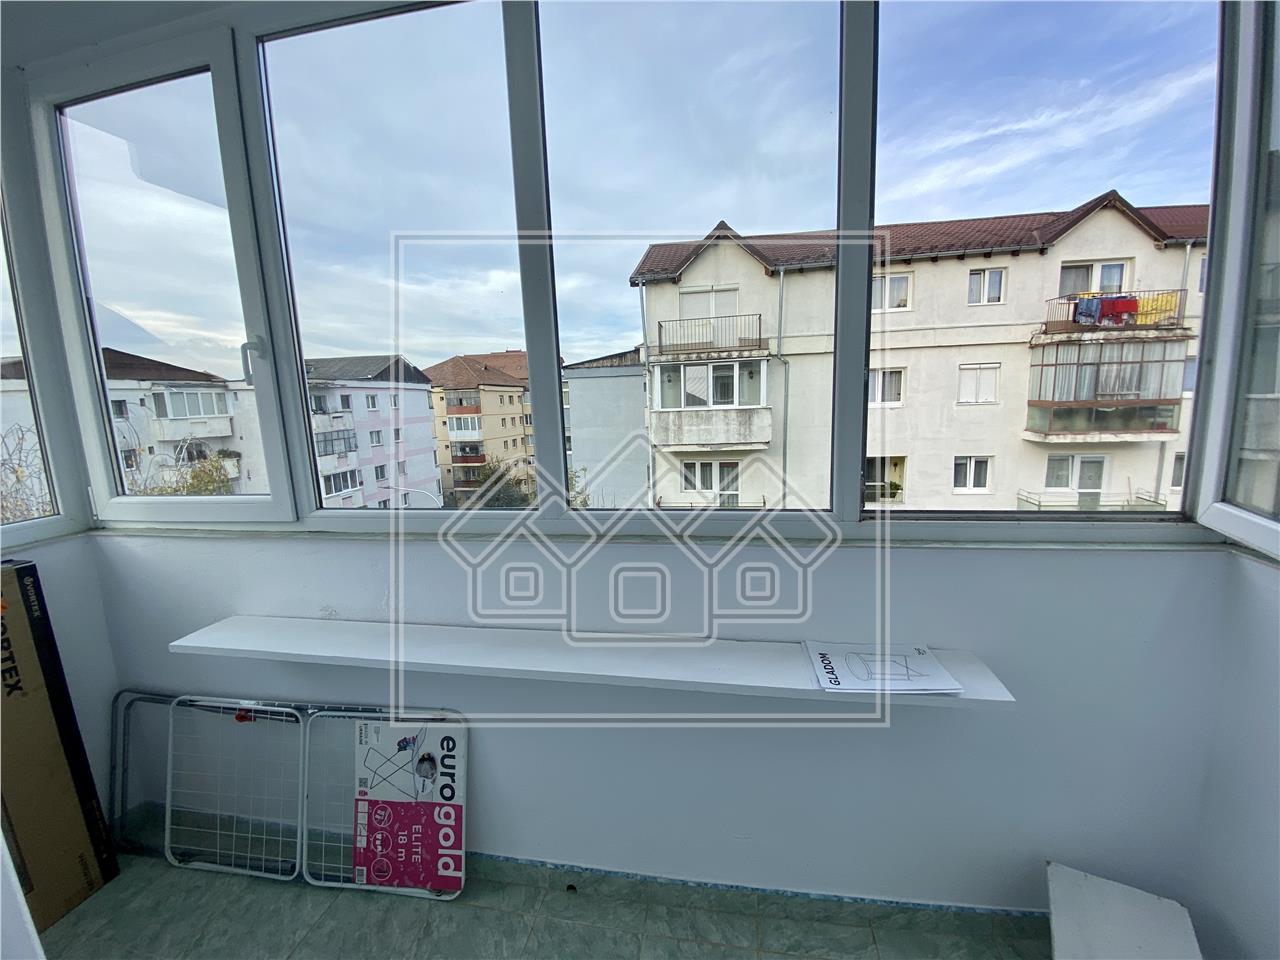 Apartament de inchiriat in Sibiu - 2 camere -mobilat utilat- V. Aurie